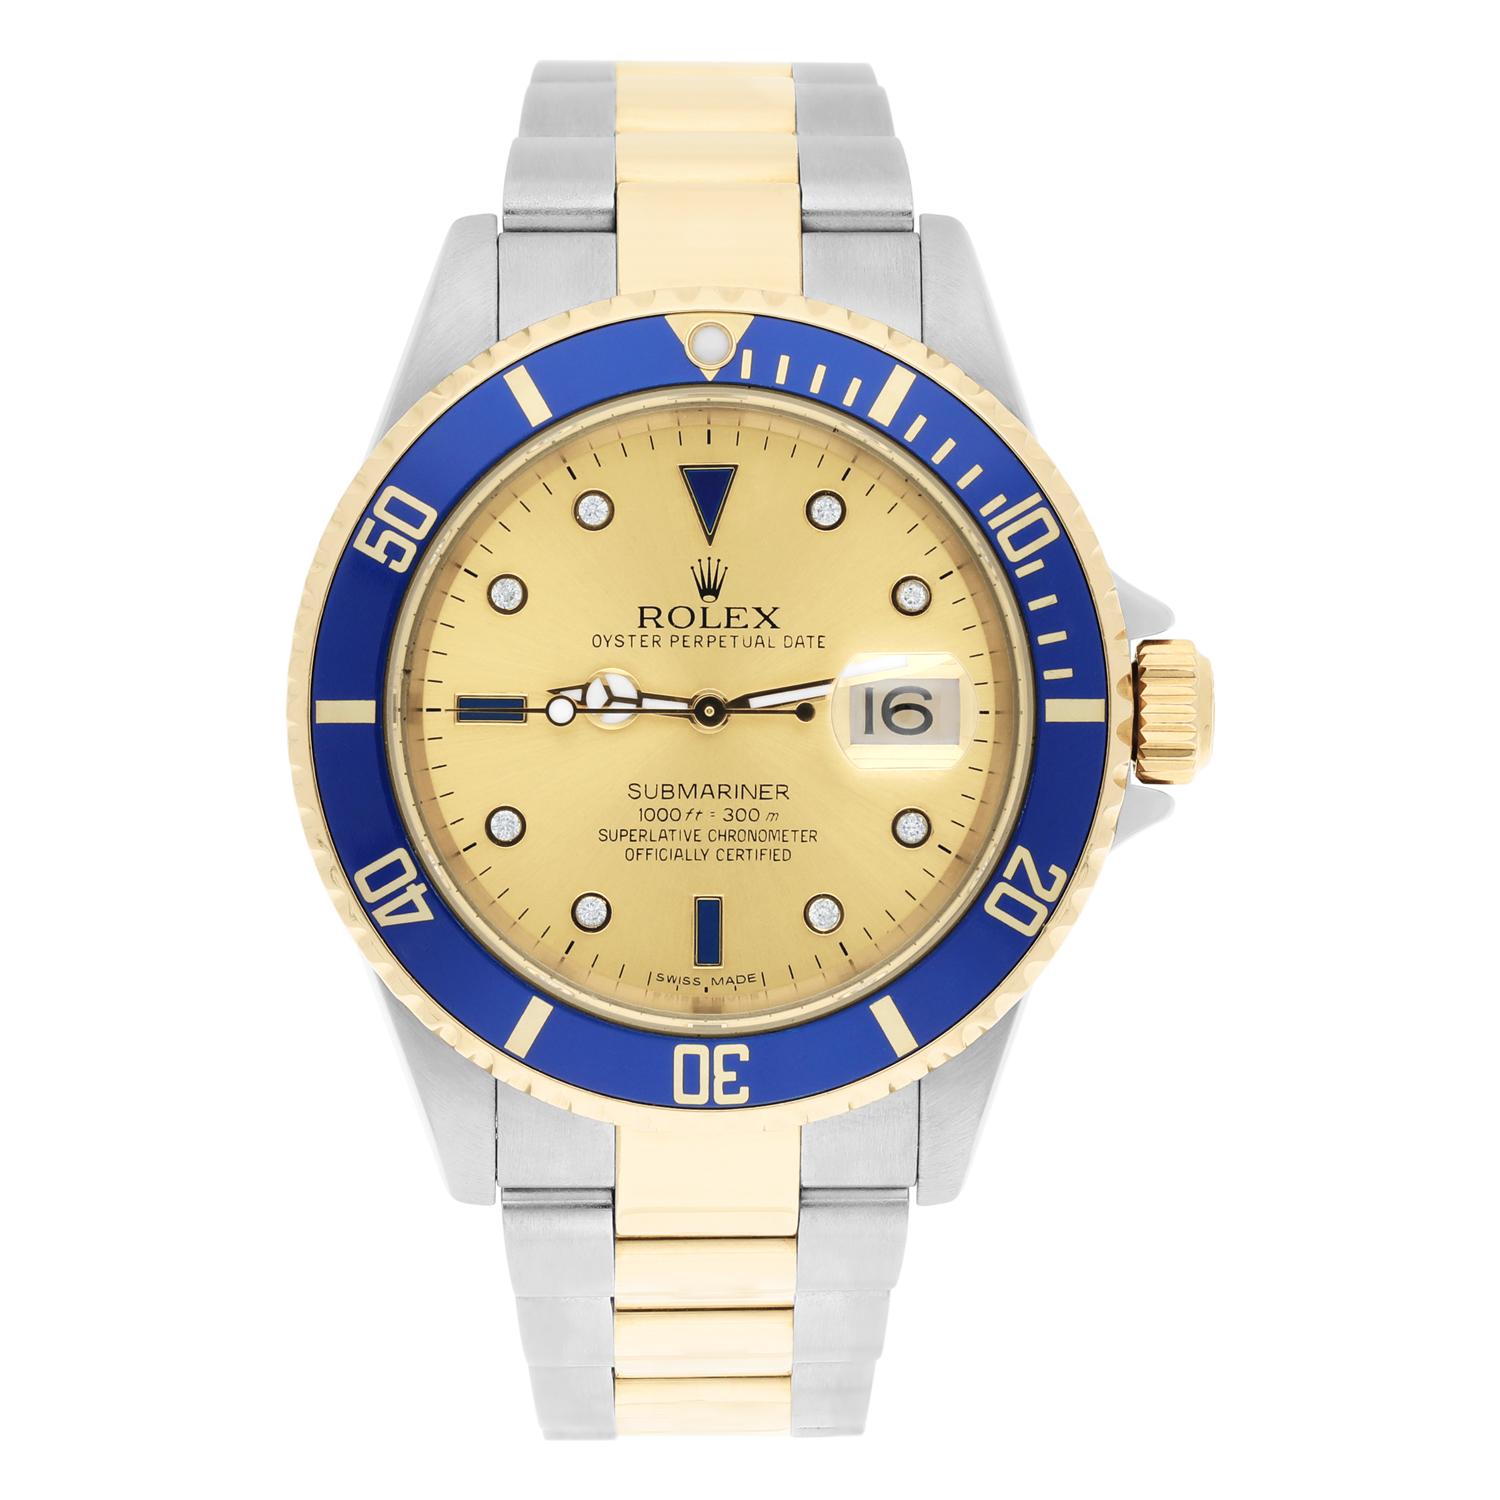 Cette montre Rolex Submariner est un véritable objet de luxe pour tout homme. Avec son bracelet multicolore en or jaune 18 carats et en acier inoxydable, et son boîtier en or jaune 18 carats et en acier inoxydable, cette montre respire la classe et